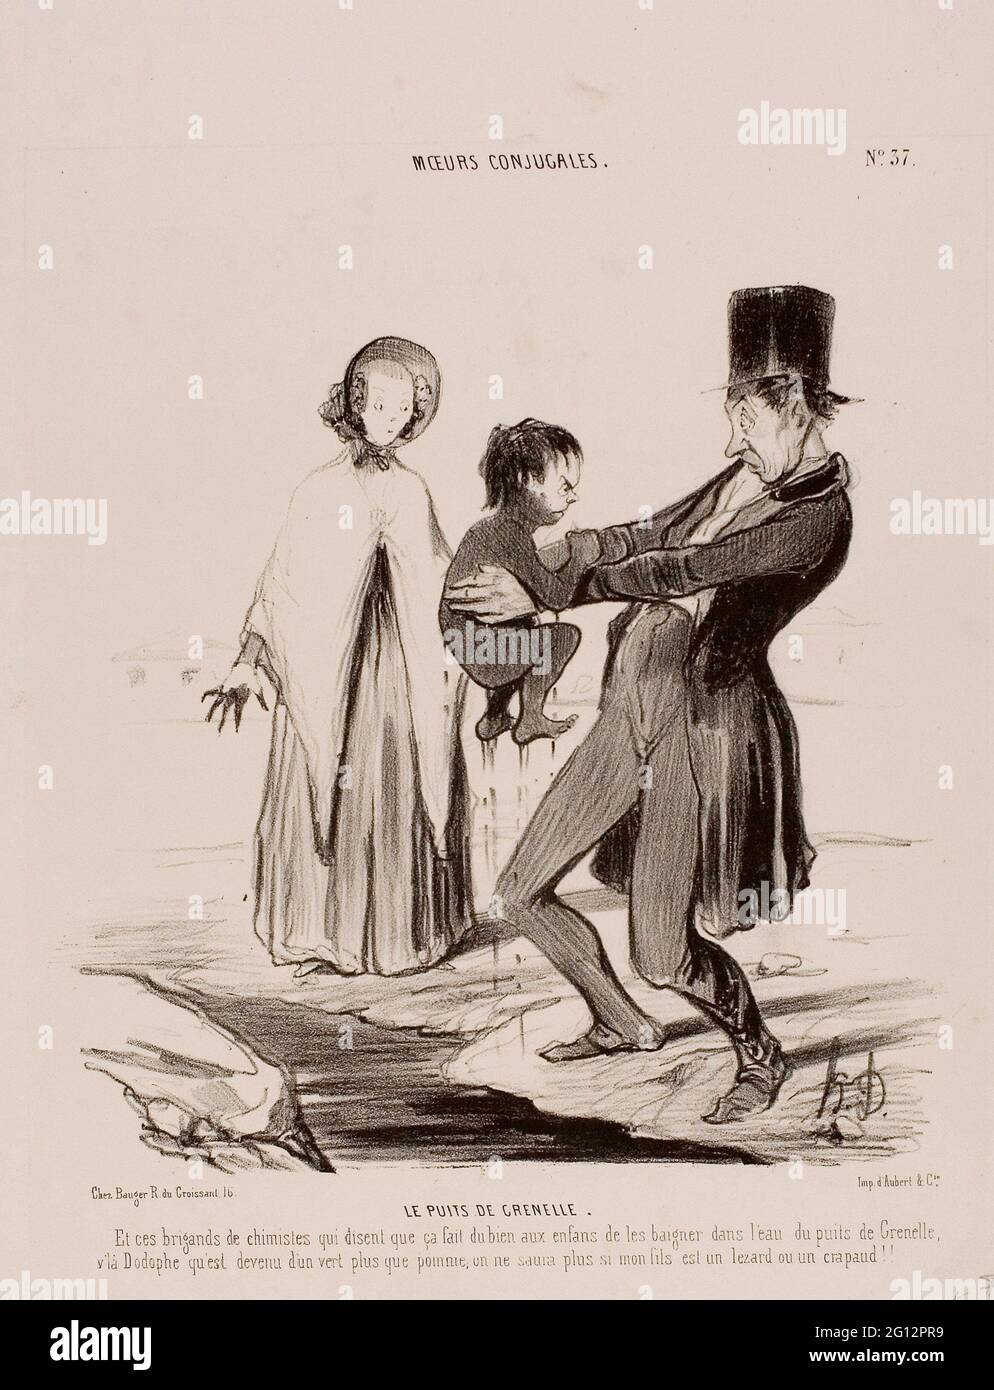 Honor-Victorin Daumier. Le Wells di Grenelle. Oand questi scoundrels dei chimici stanno sostenendo che è buono affinchè i bambini bagnino nei pozzi di Foto Stock